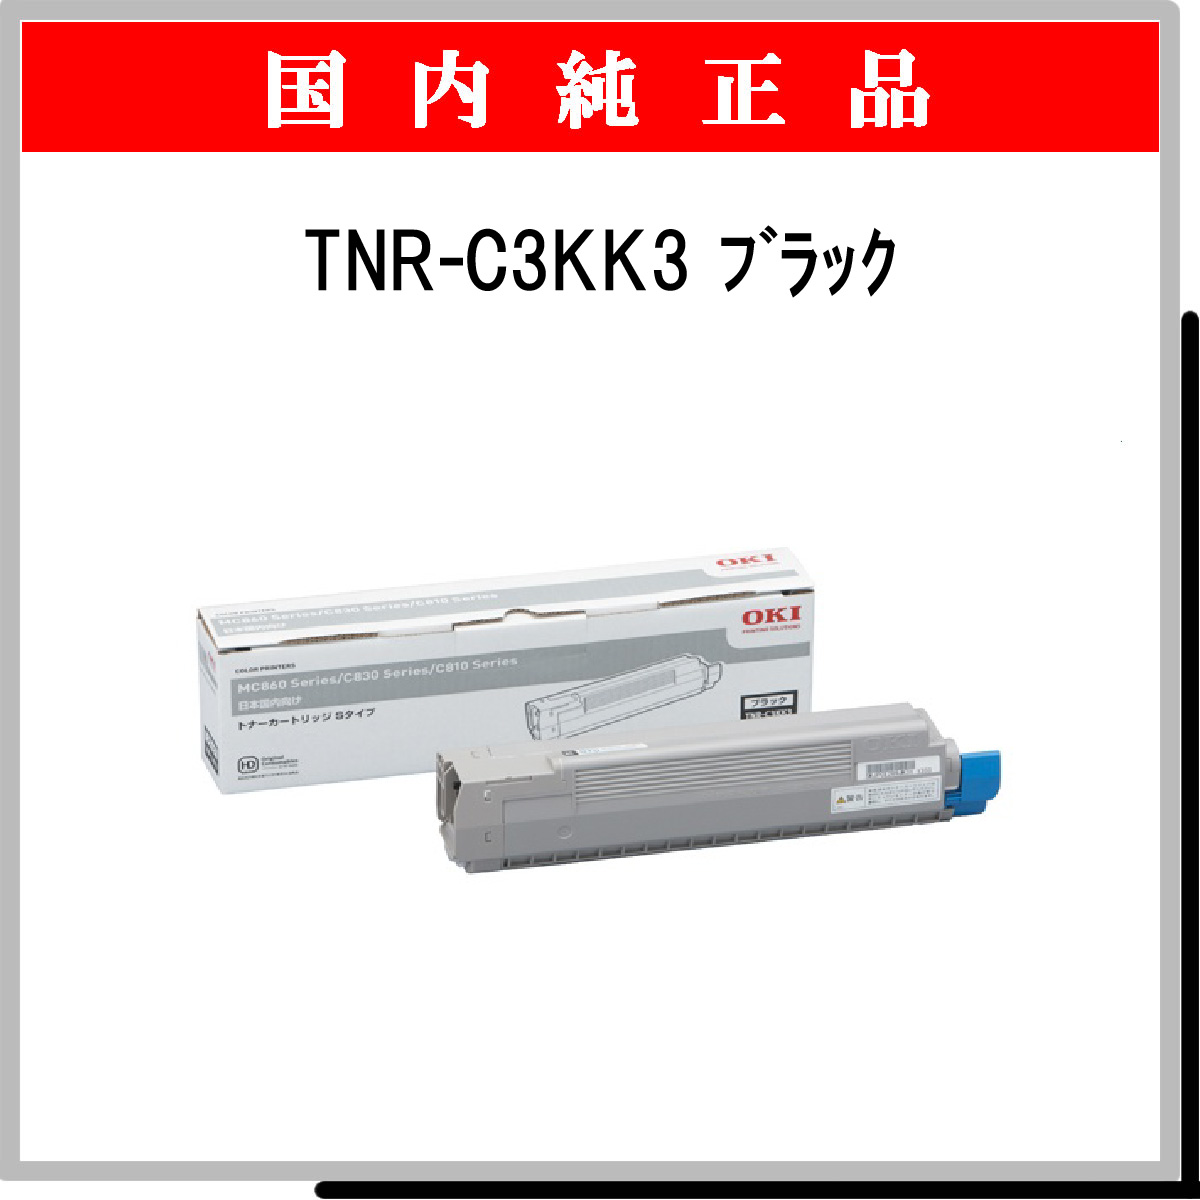 TNR-C3KK3 純正